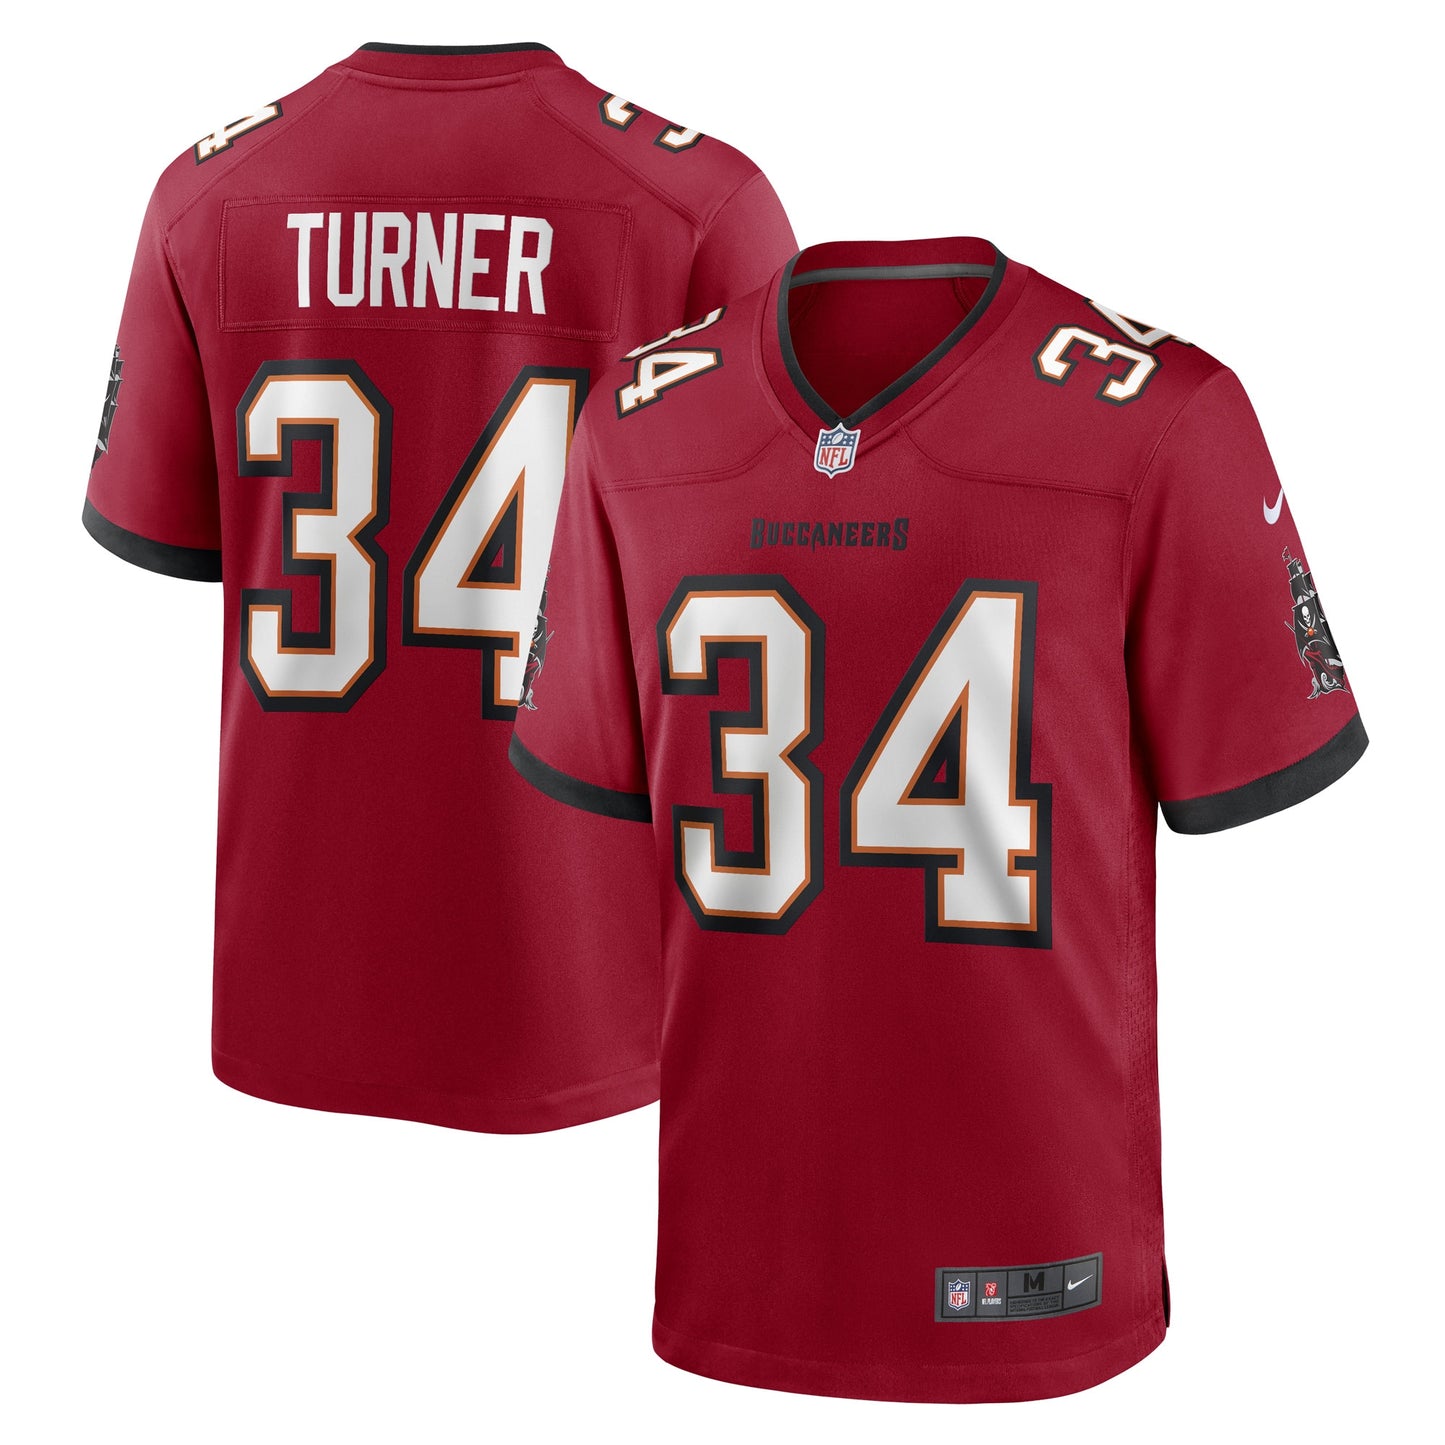 Nolan Turner Tampa Bay Buccaneers Nike Game Player Jersey - Red